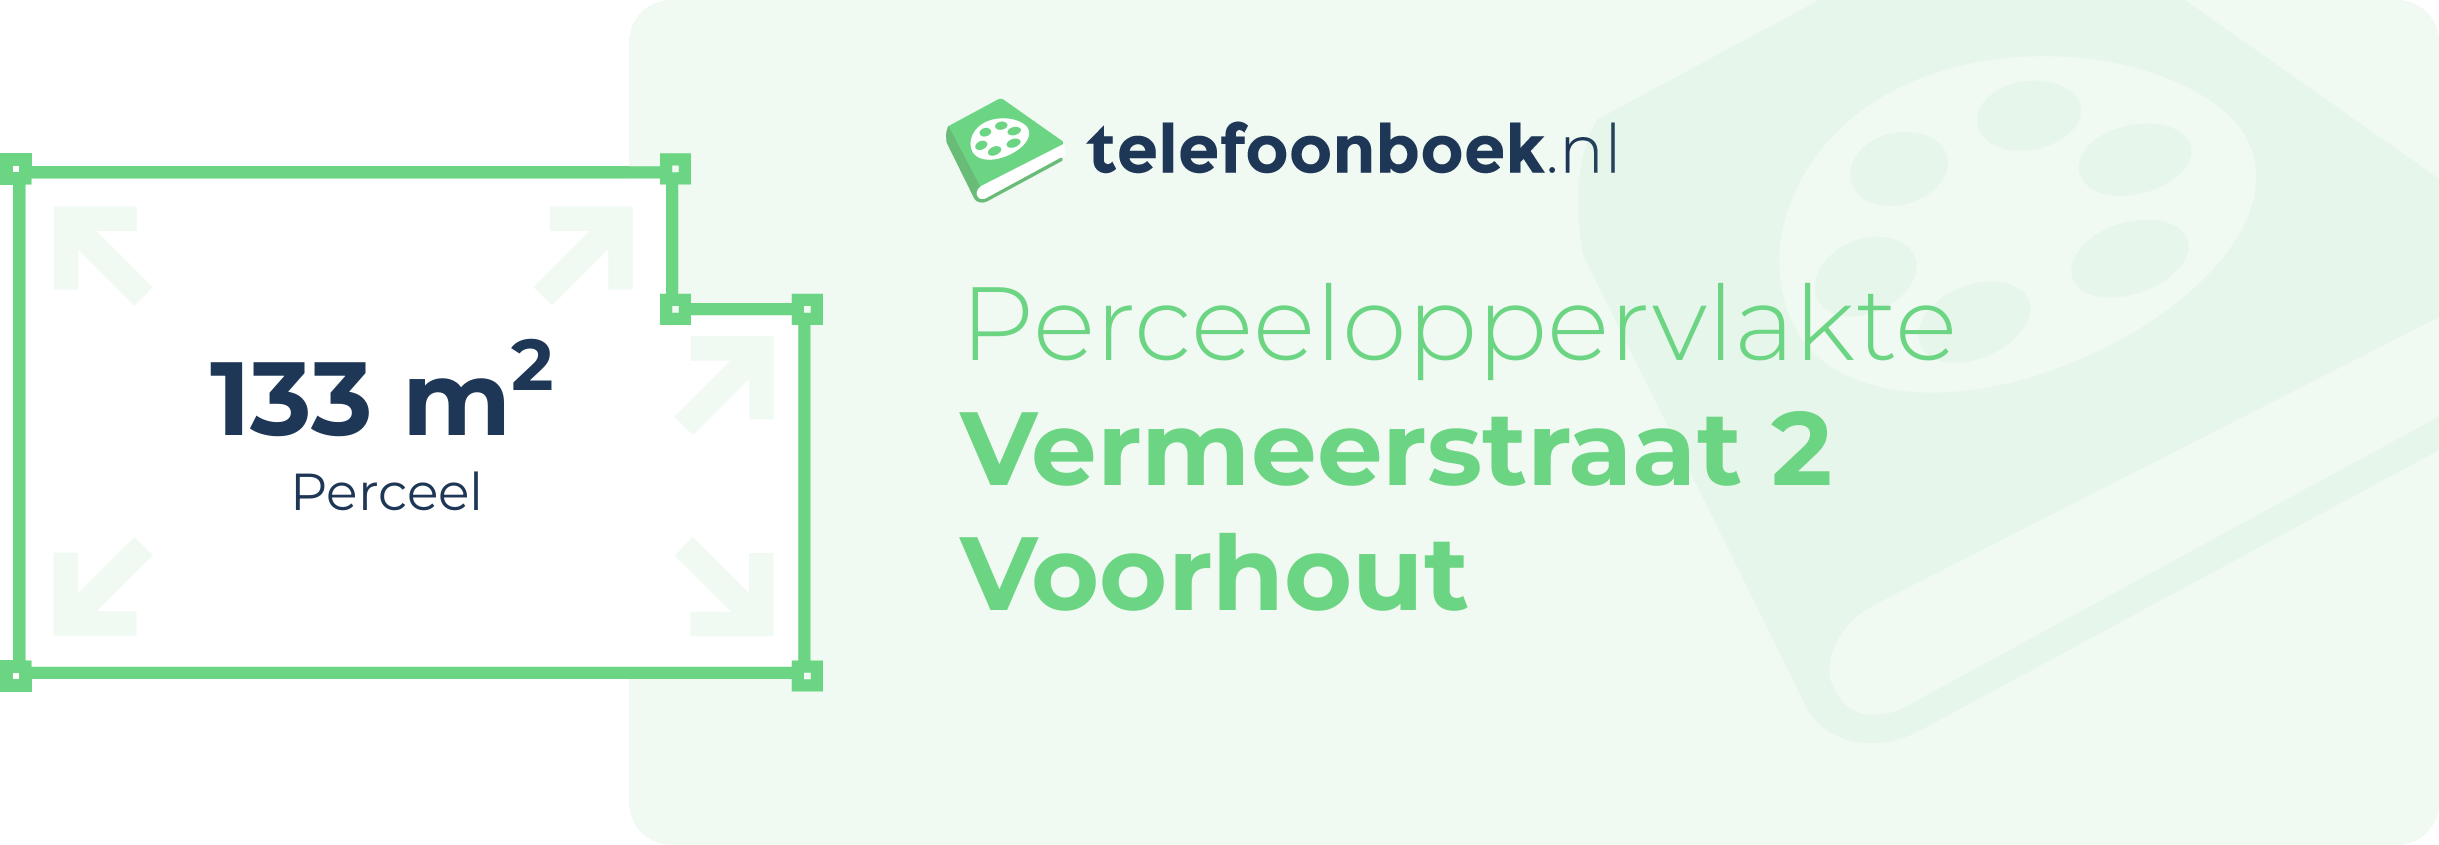 Perceeloppervlakte Vermeerstraat 2 Voorhout